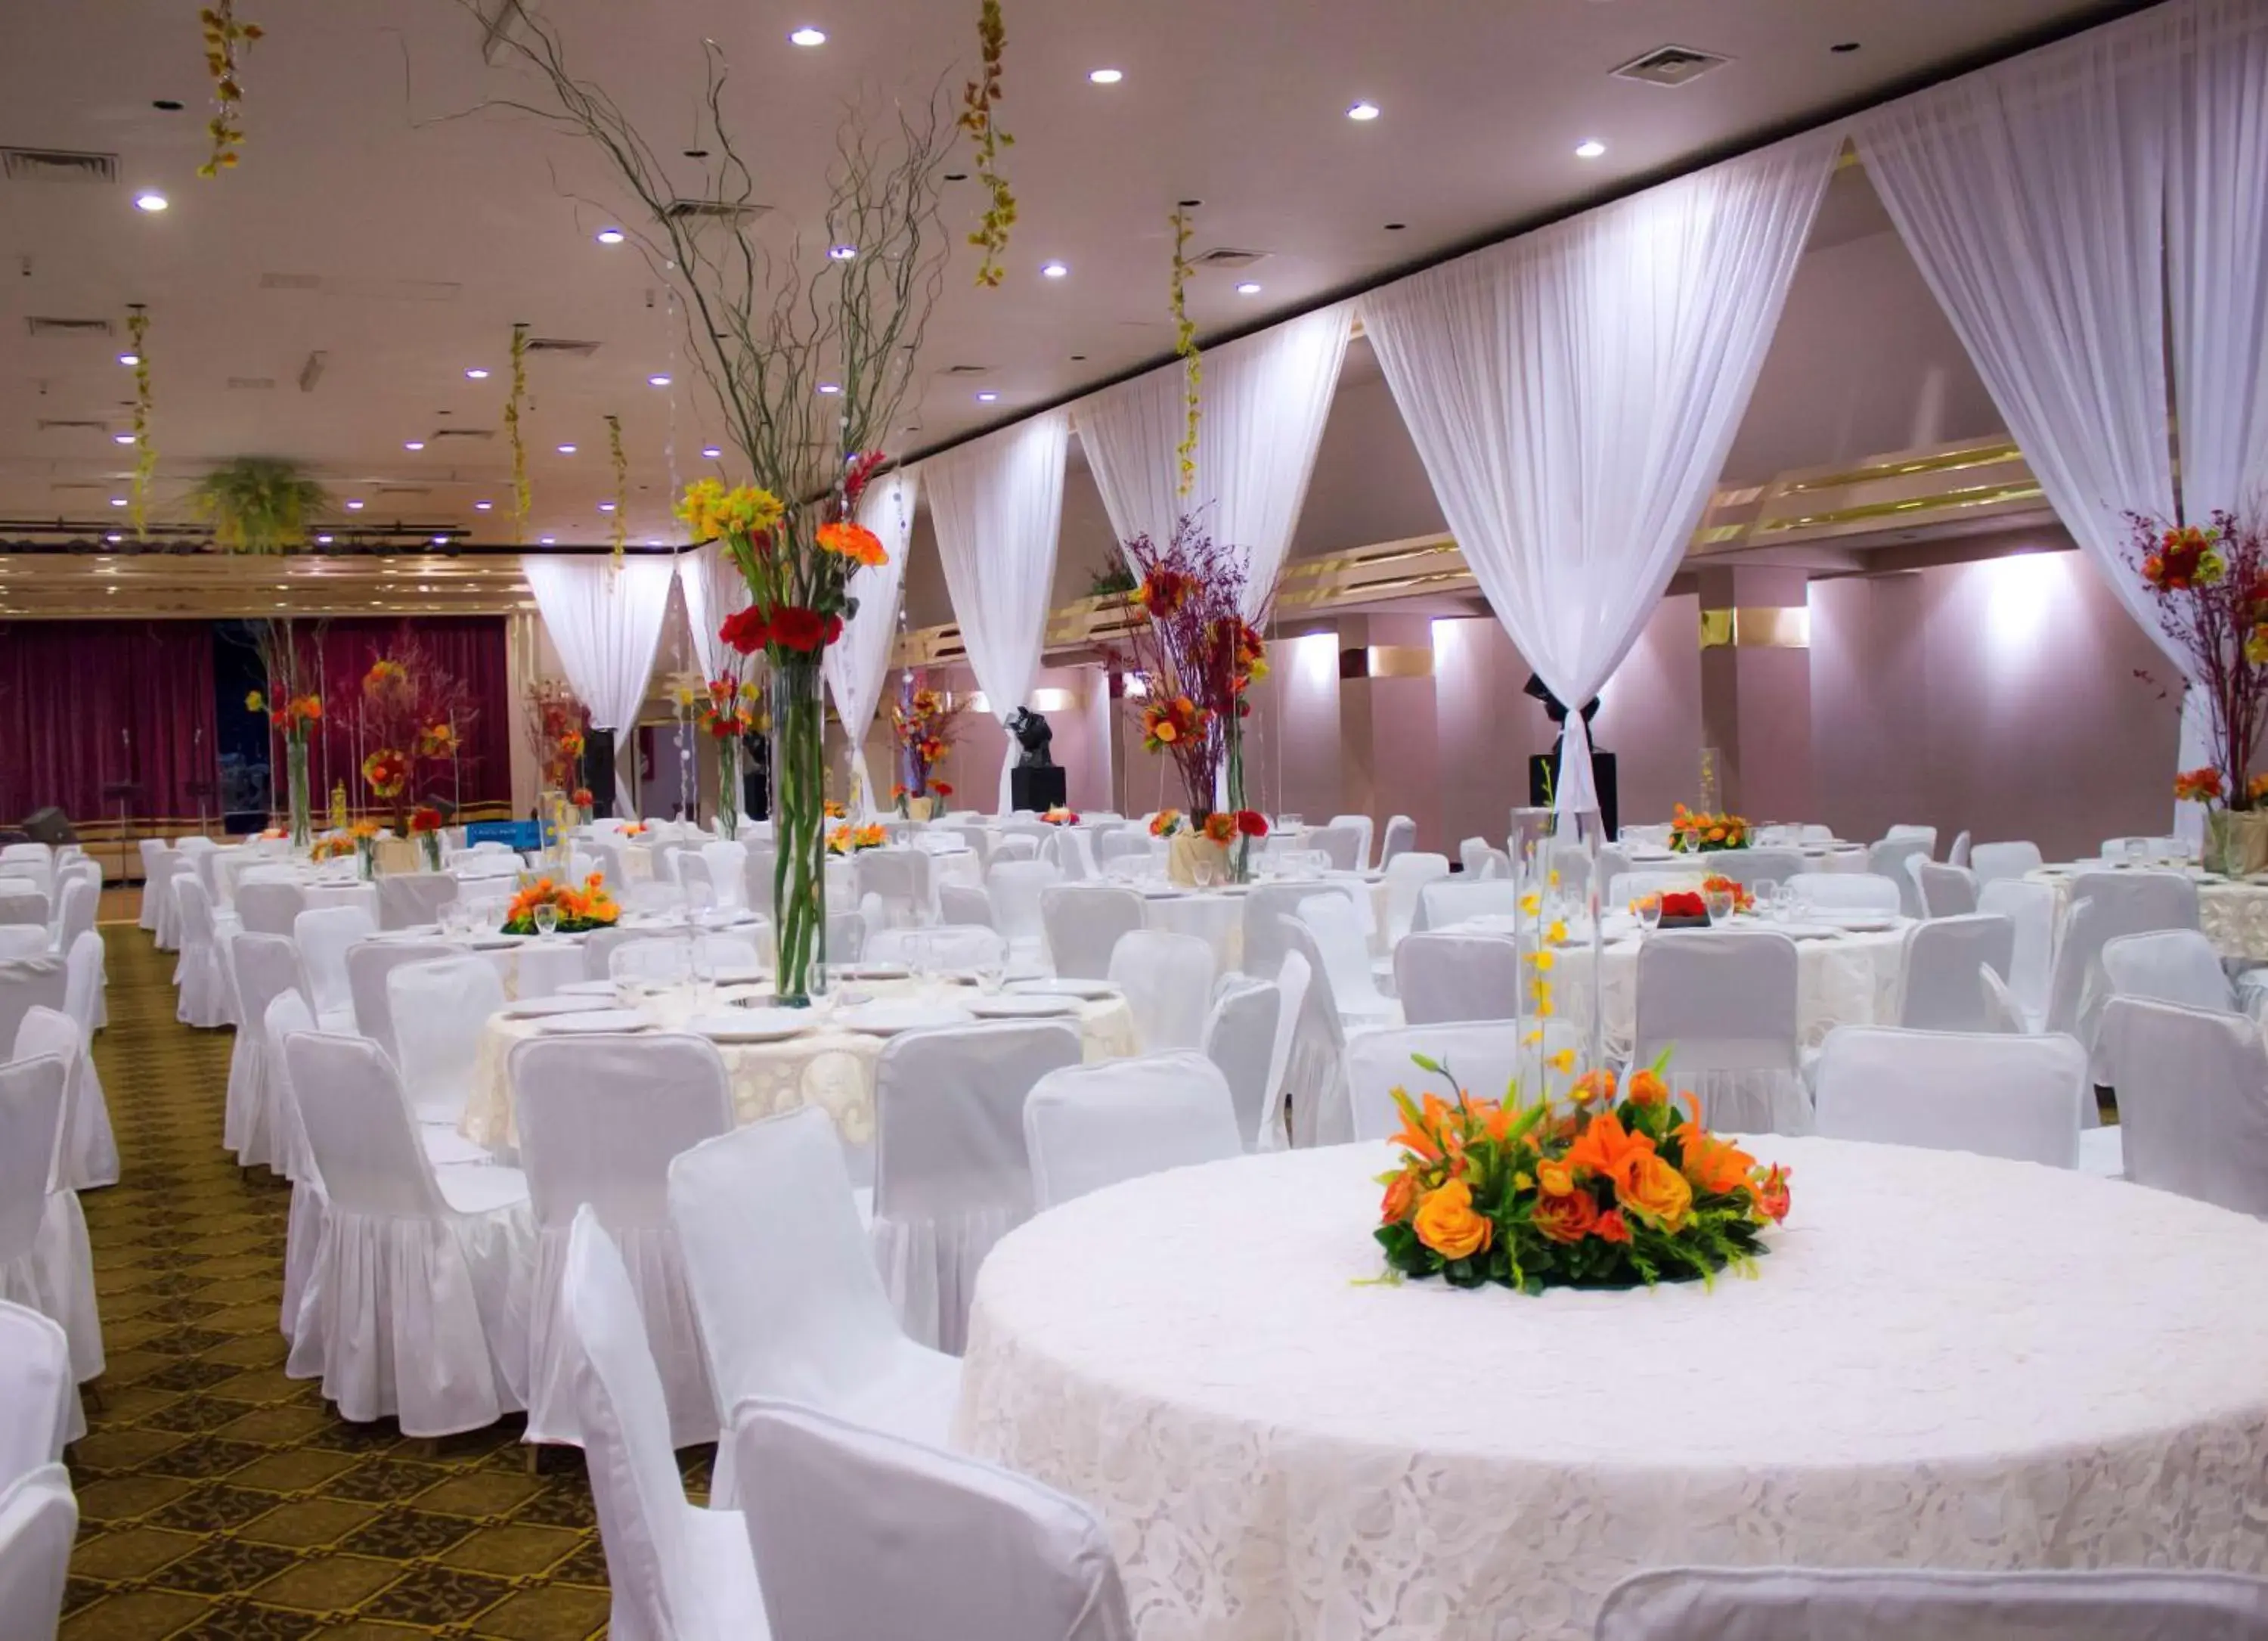 Meeting/conference room, Banquet Facilities in HM Mirador